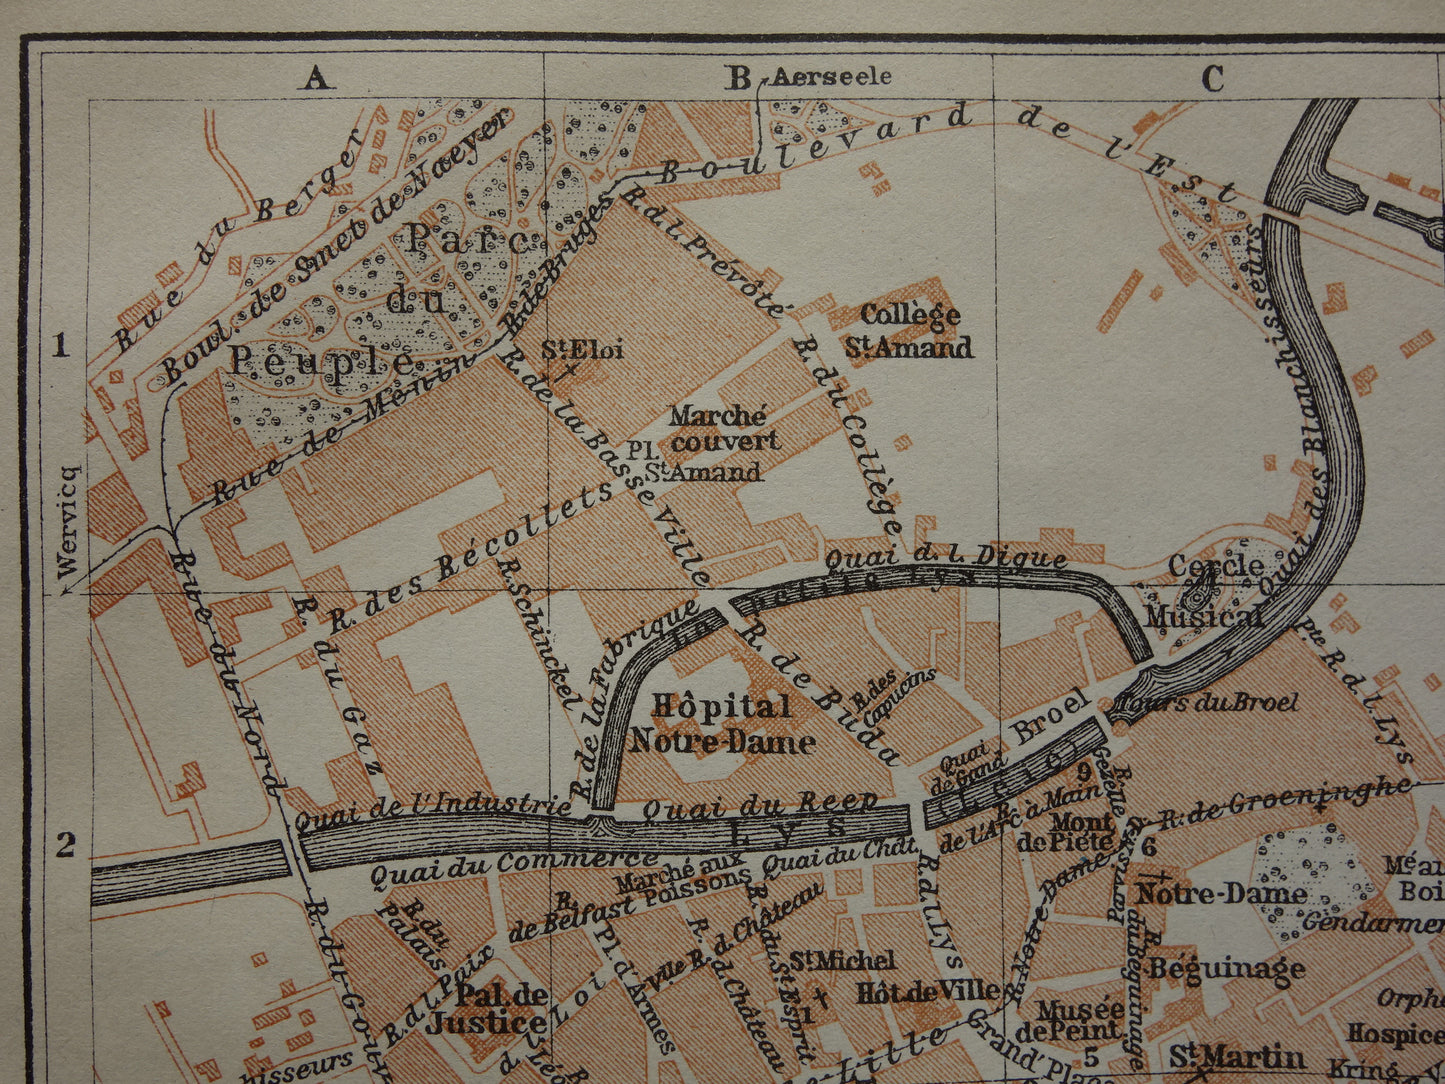 KORTRIJK oude kaart van Kortrijk / Courtrai België uit 1914 kleine originele antieke plattegrond landkaart